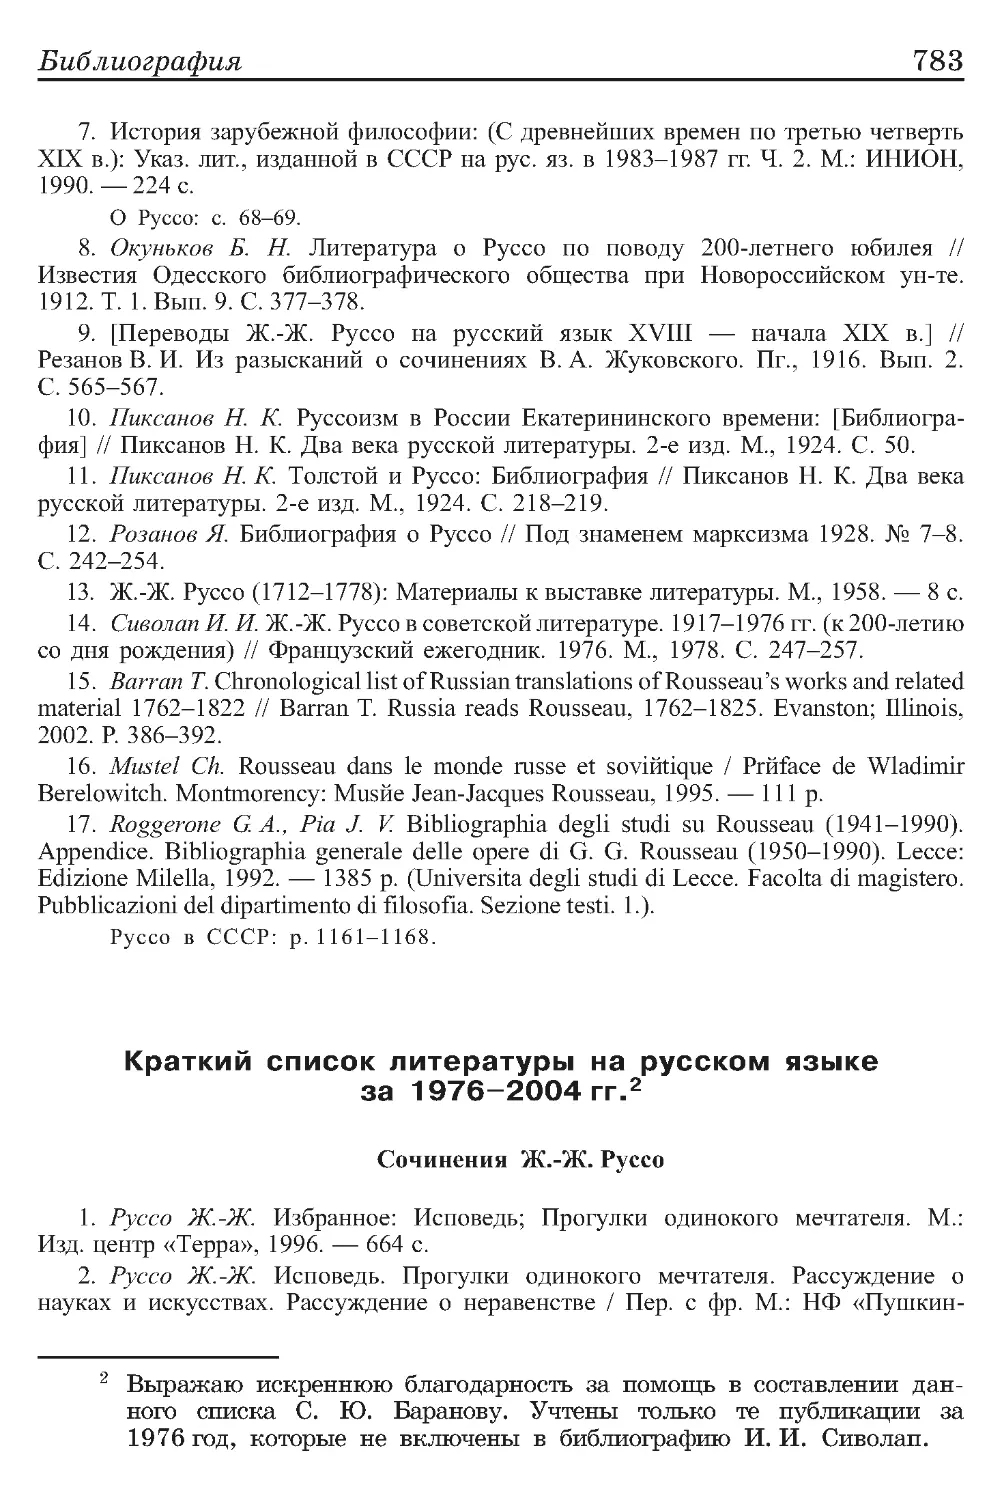 Краткий список литературы на русском языке за 1976-2004 гг.